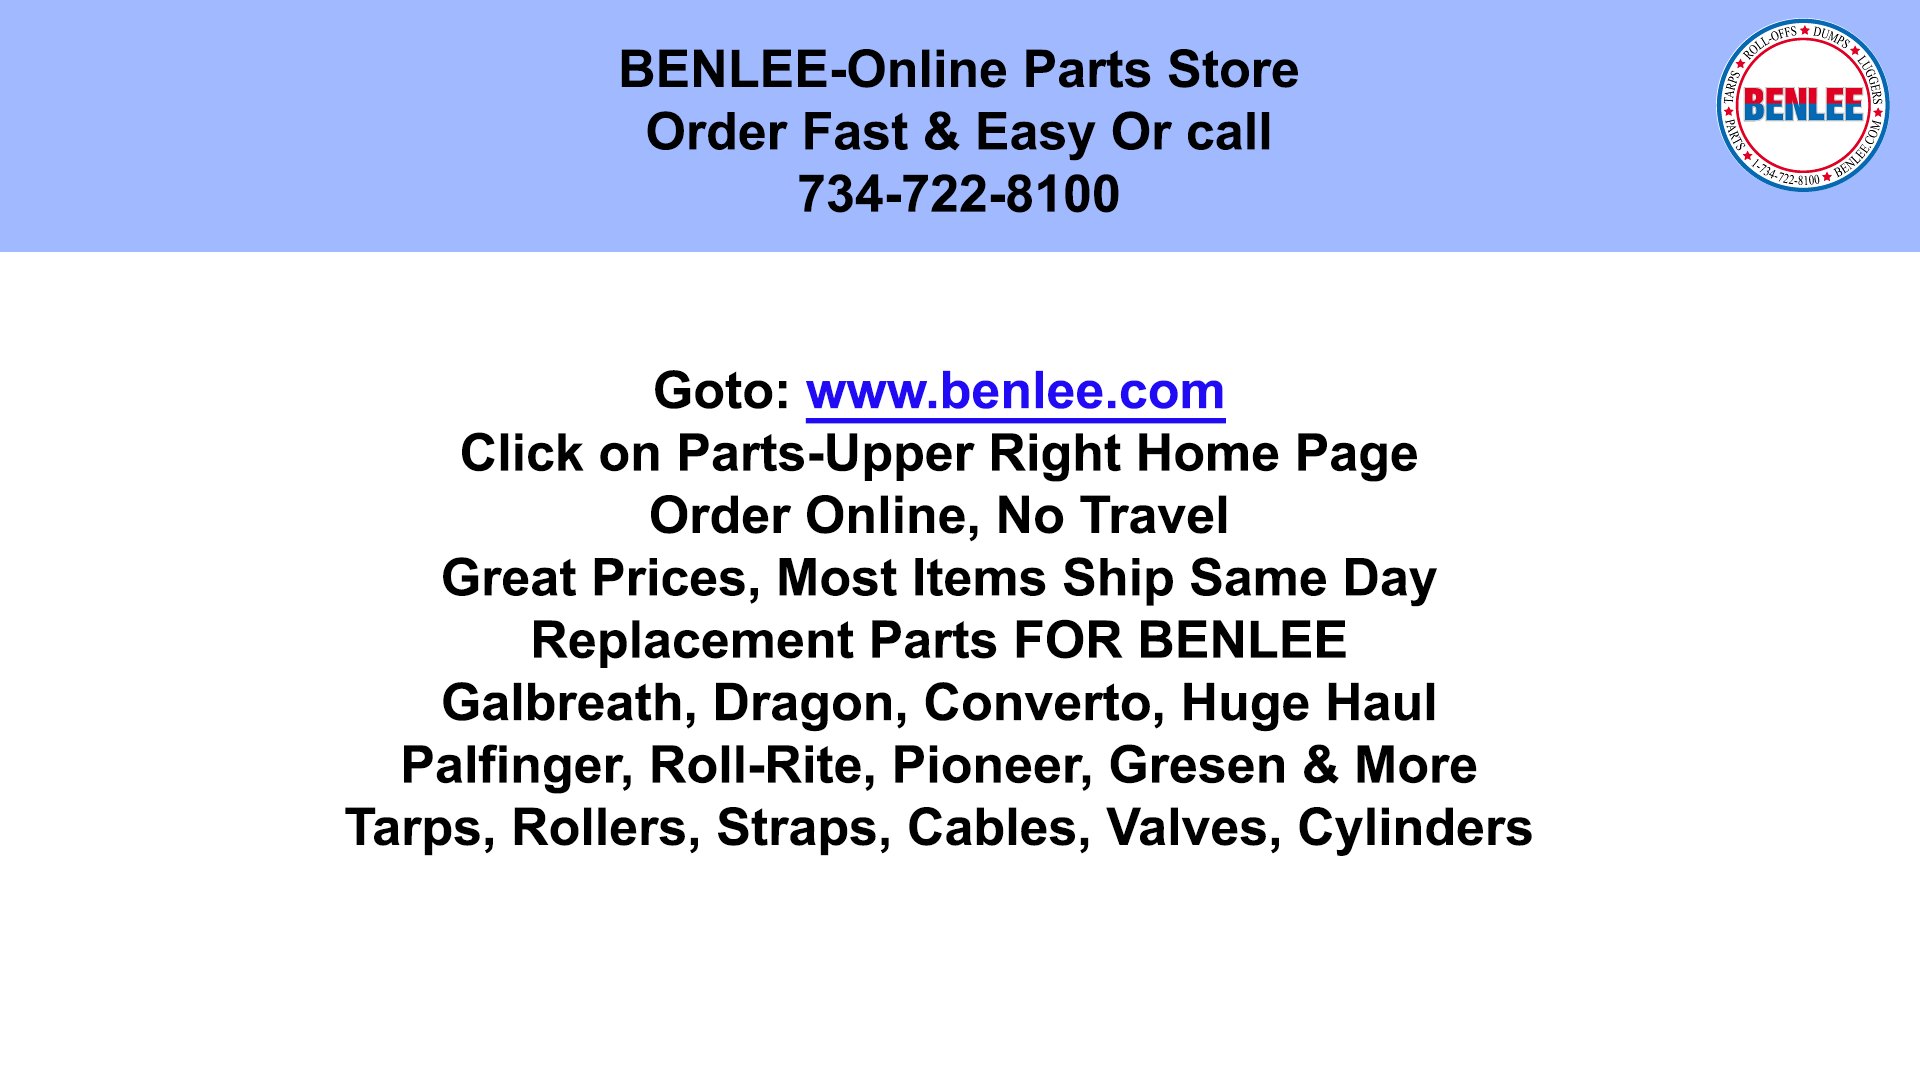 BENLEE Parts Store